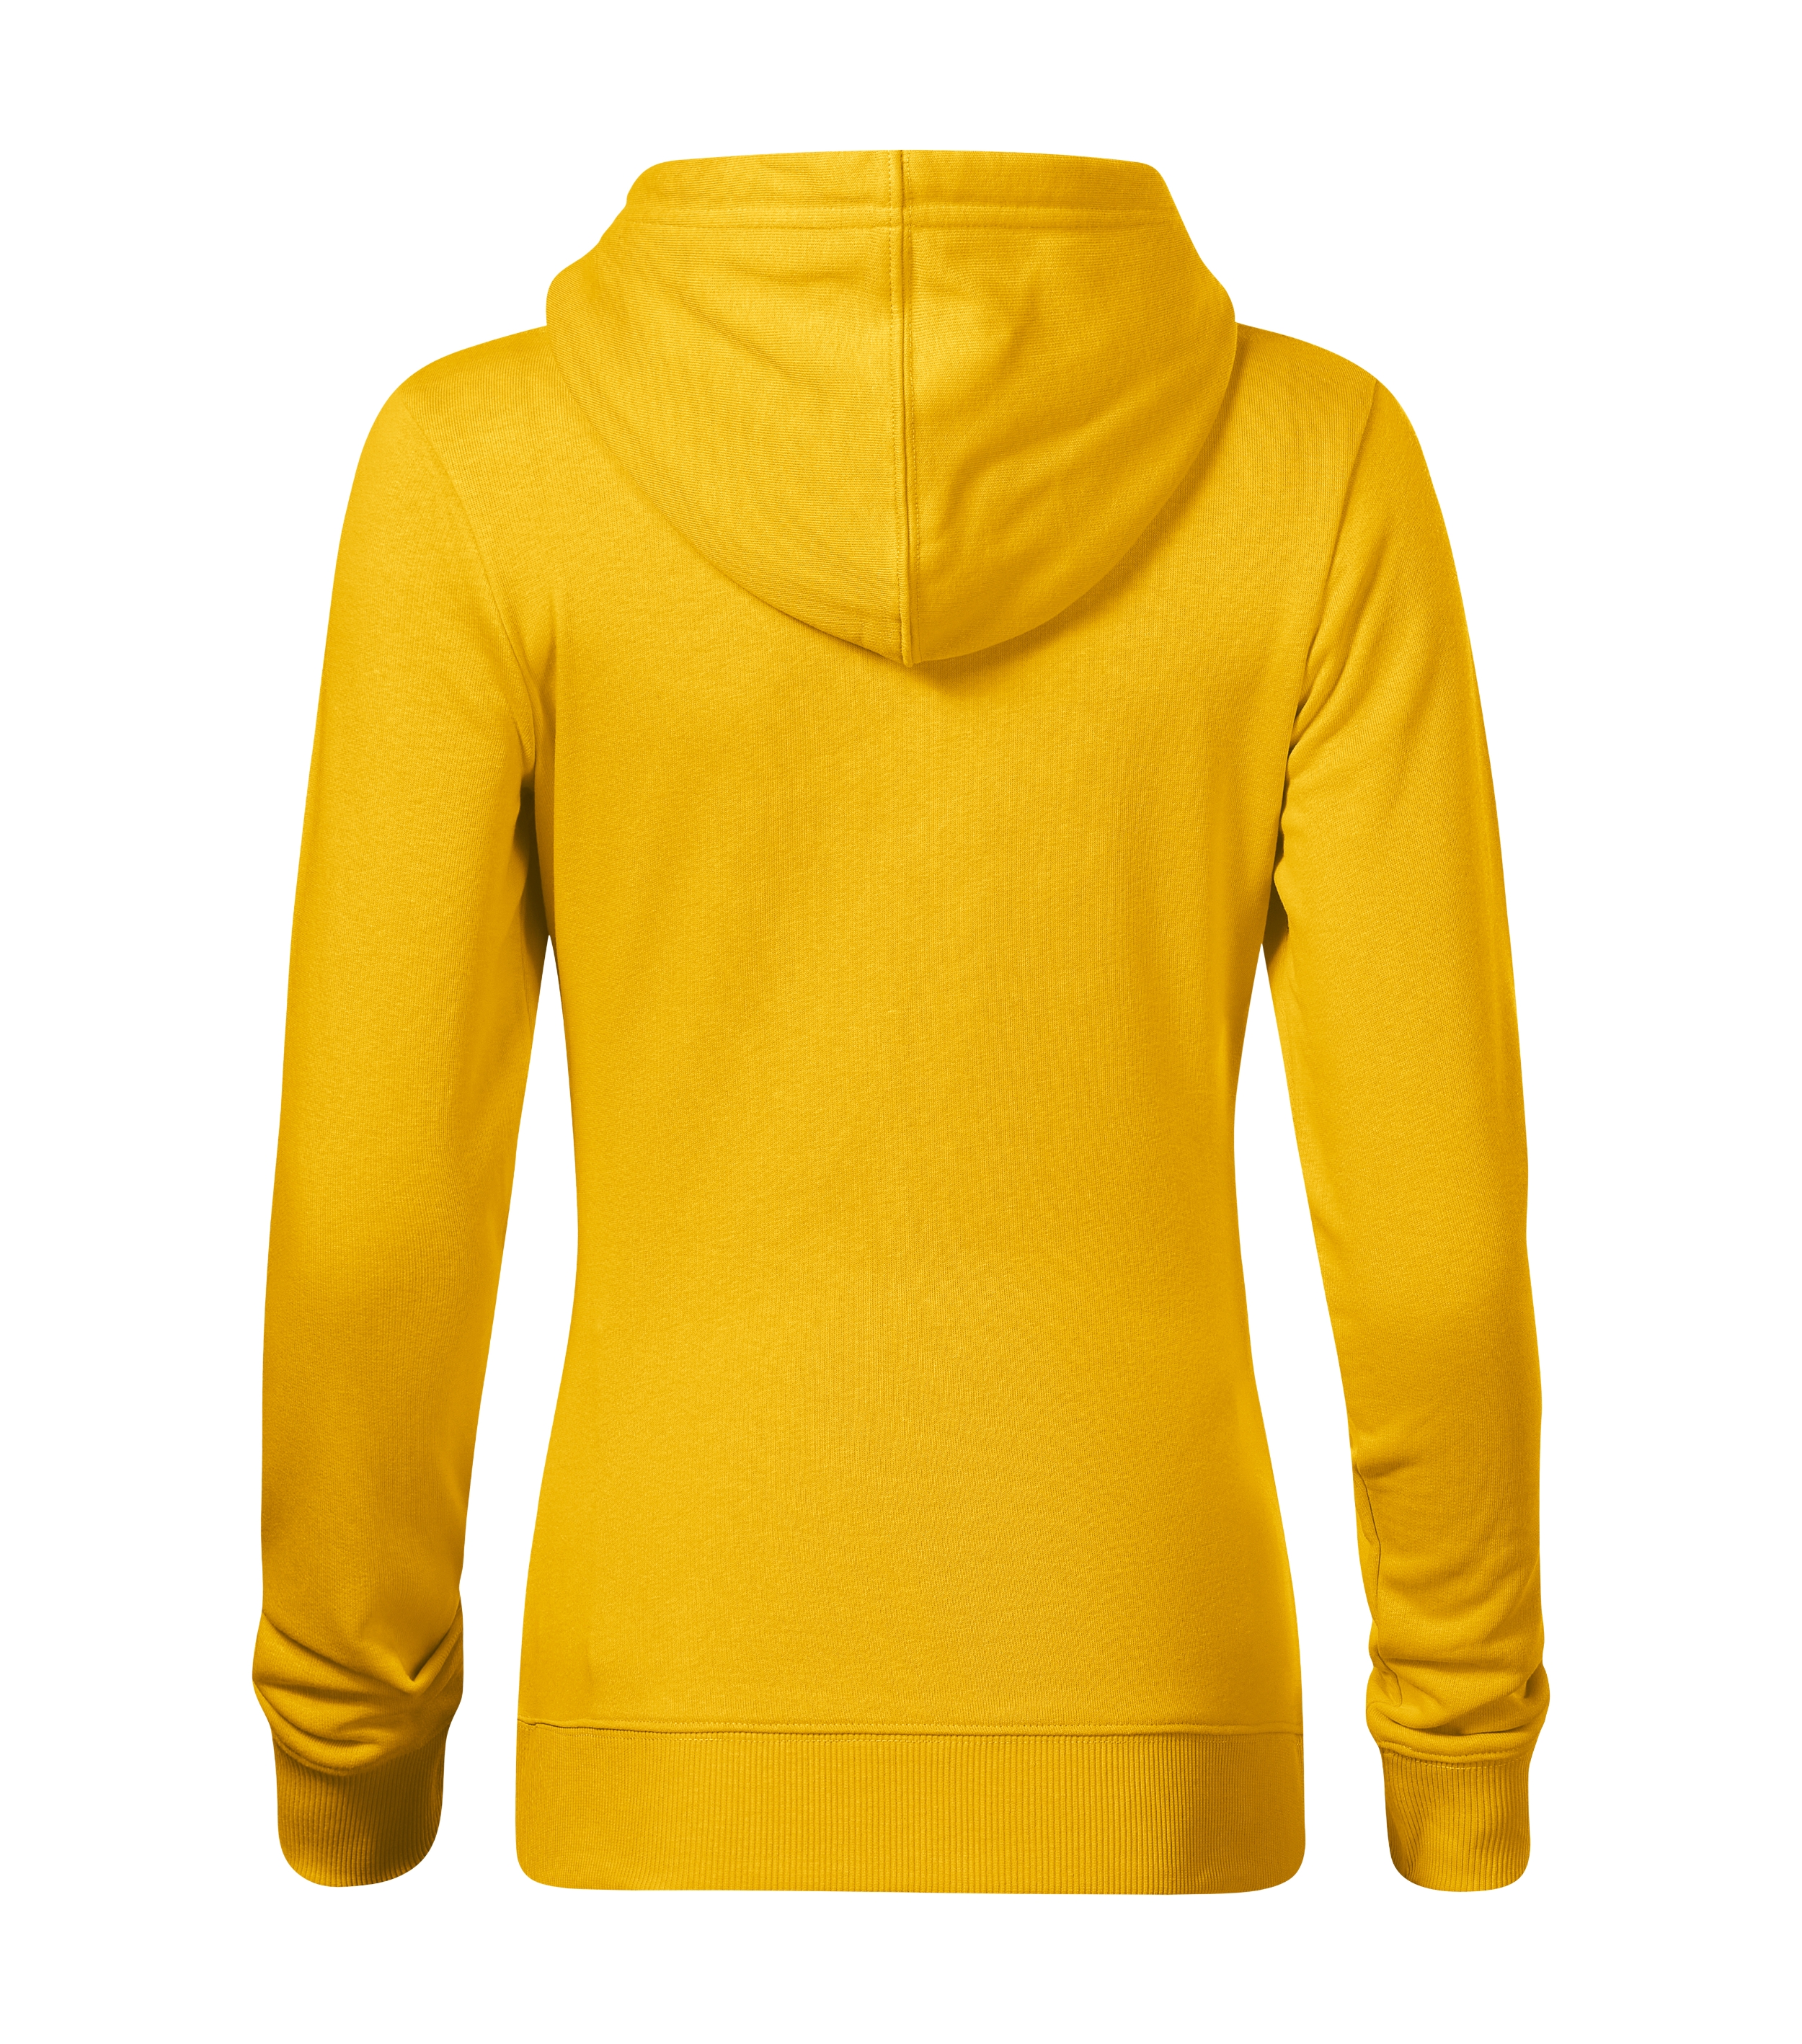 Basic Damen Pullover - BREAK (GRS) 841 Damen - leicht taillierter Schnitt mit Seitennähten und aufgesetzte Kängurutaschen - Sweatshirt Damen für Frauen und women 